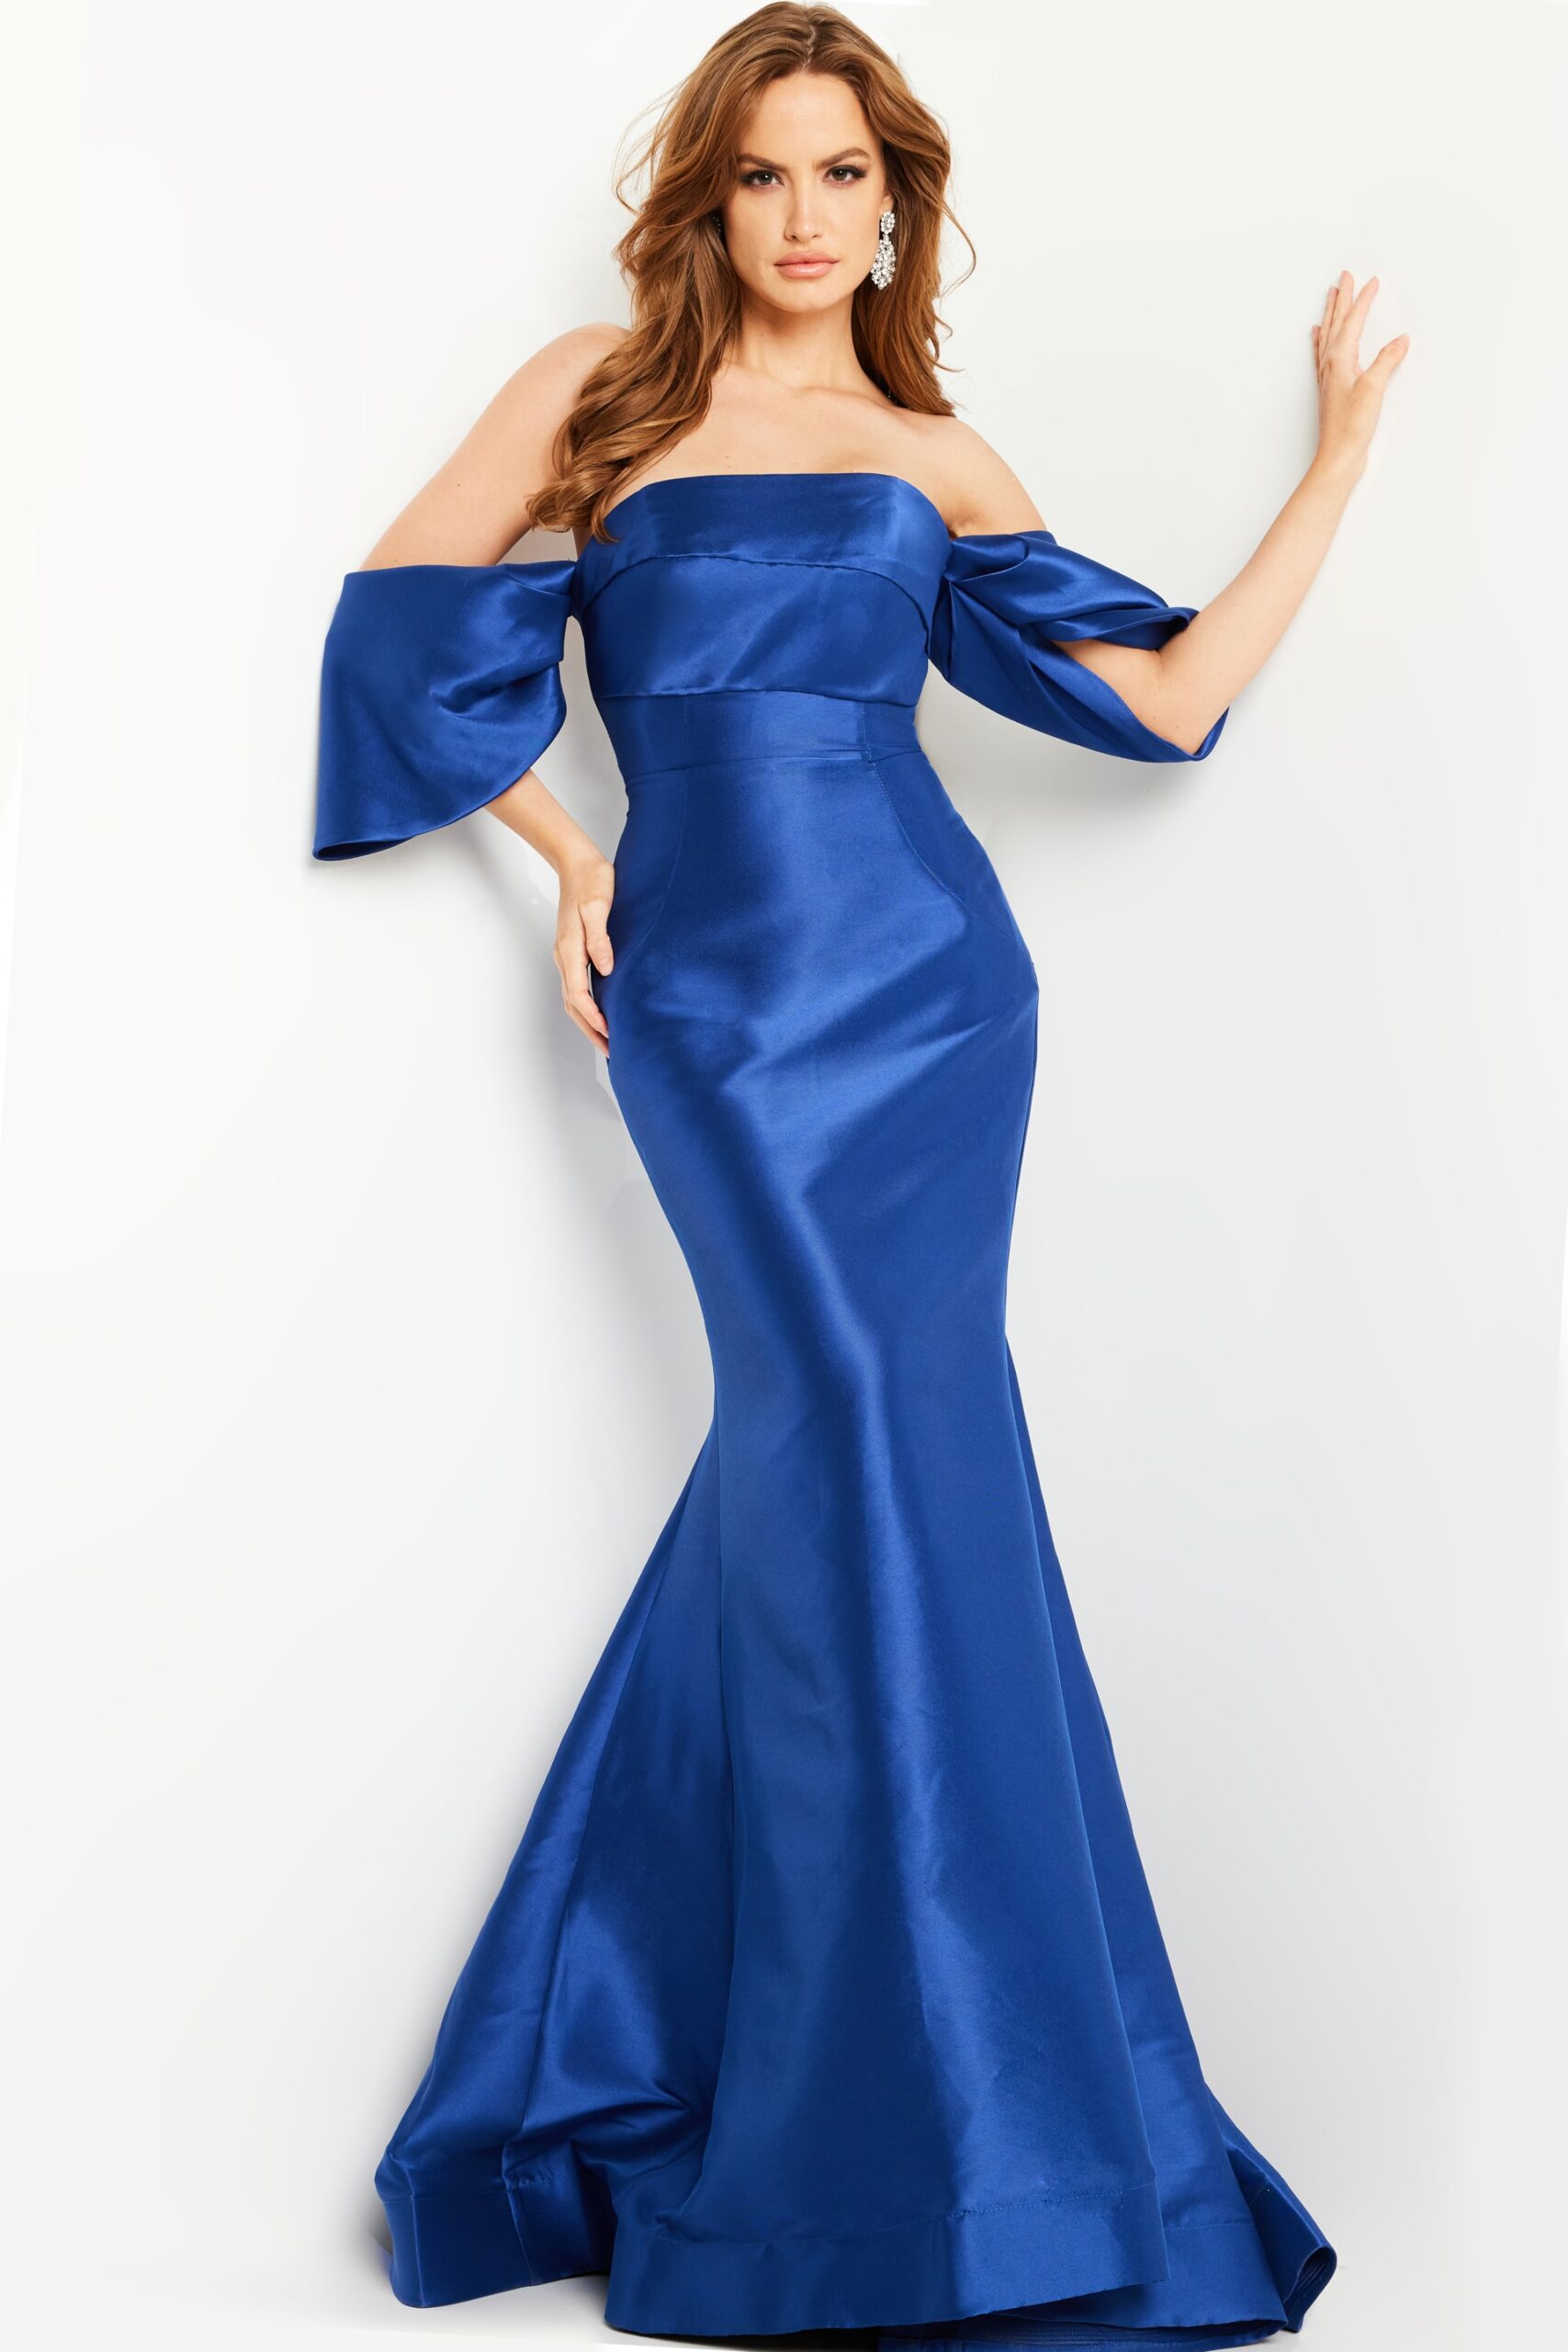 Model wearing Royal Mermaid Long Gown 23398